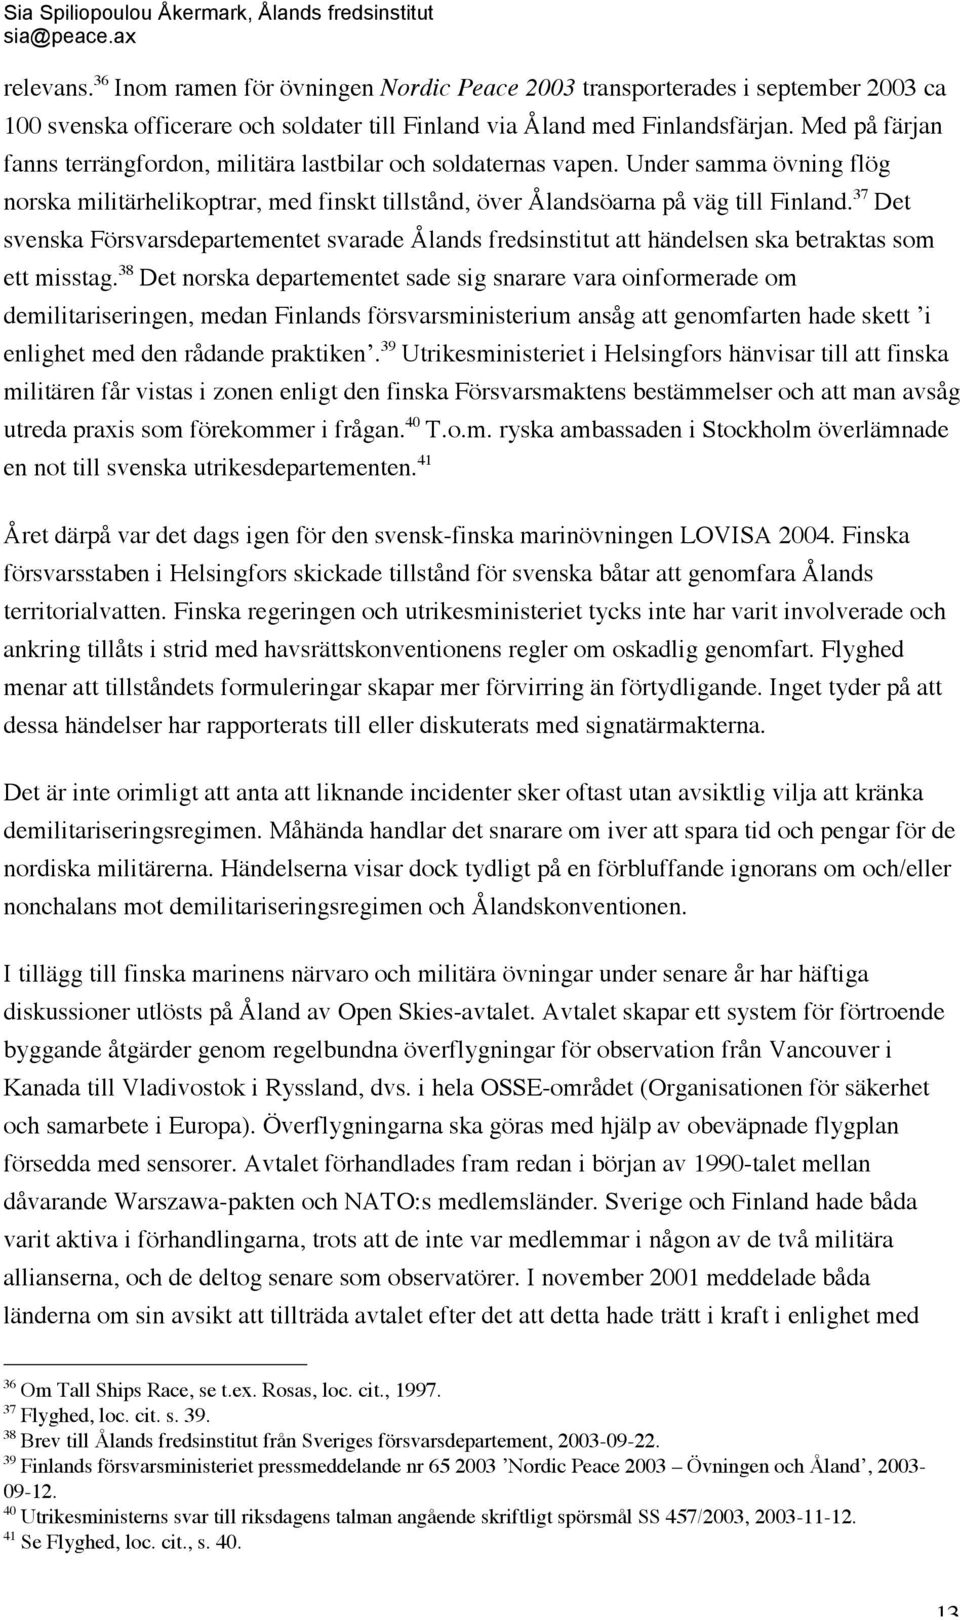 37 Det svenska Försvarsdepartementet svarade Ålands fredsinstitut att händelsen ska betraktas som ett misstag.